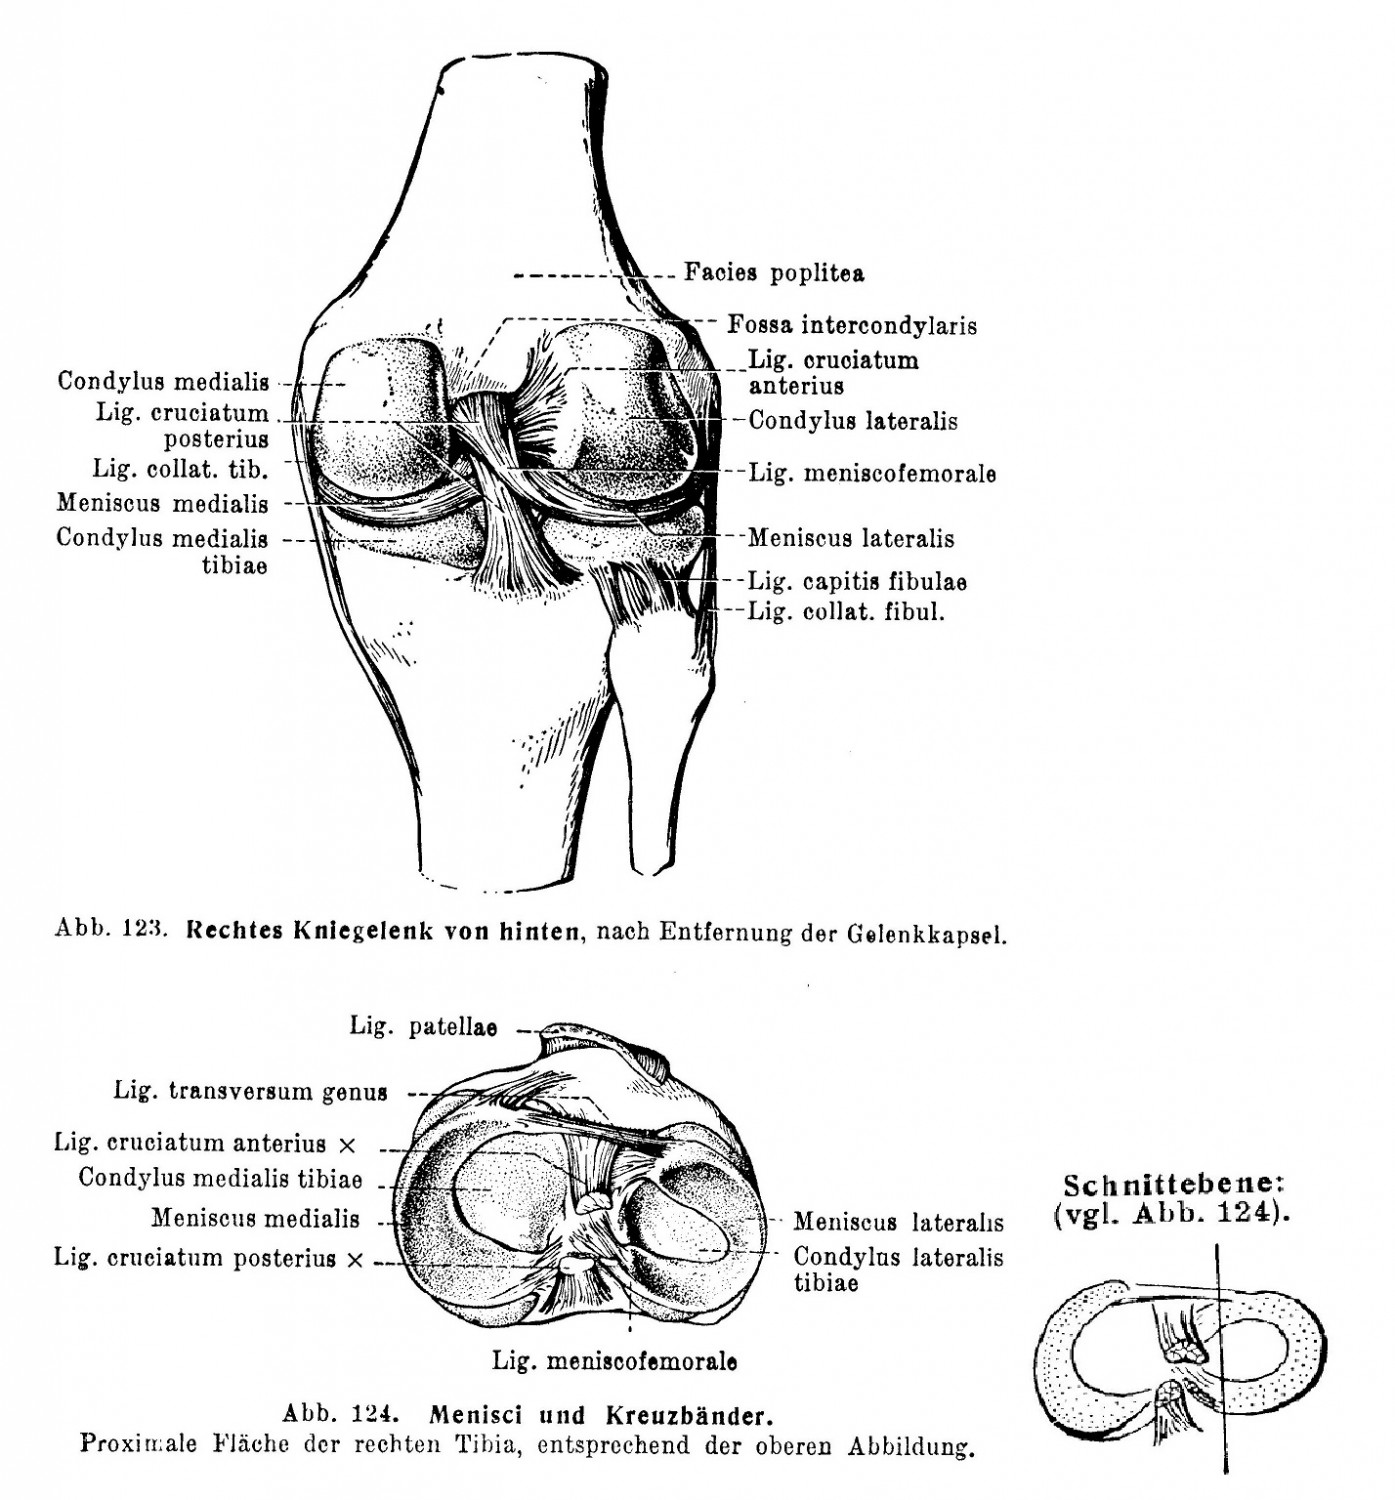 Rechtes Kniegelenk von hinten, nach Entfernung der Gelenkkapsel, Menisci und Kreuzbander